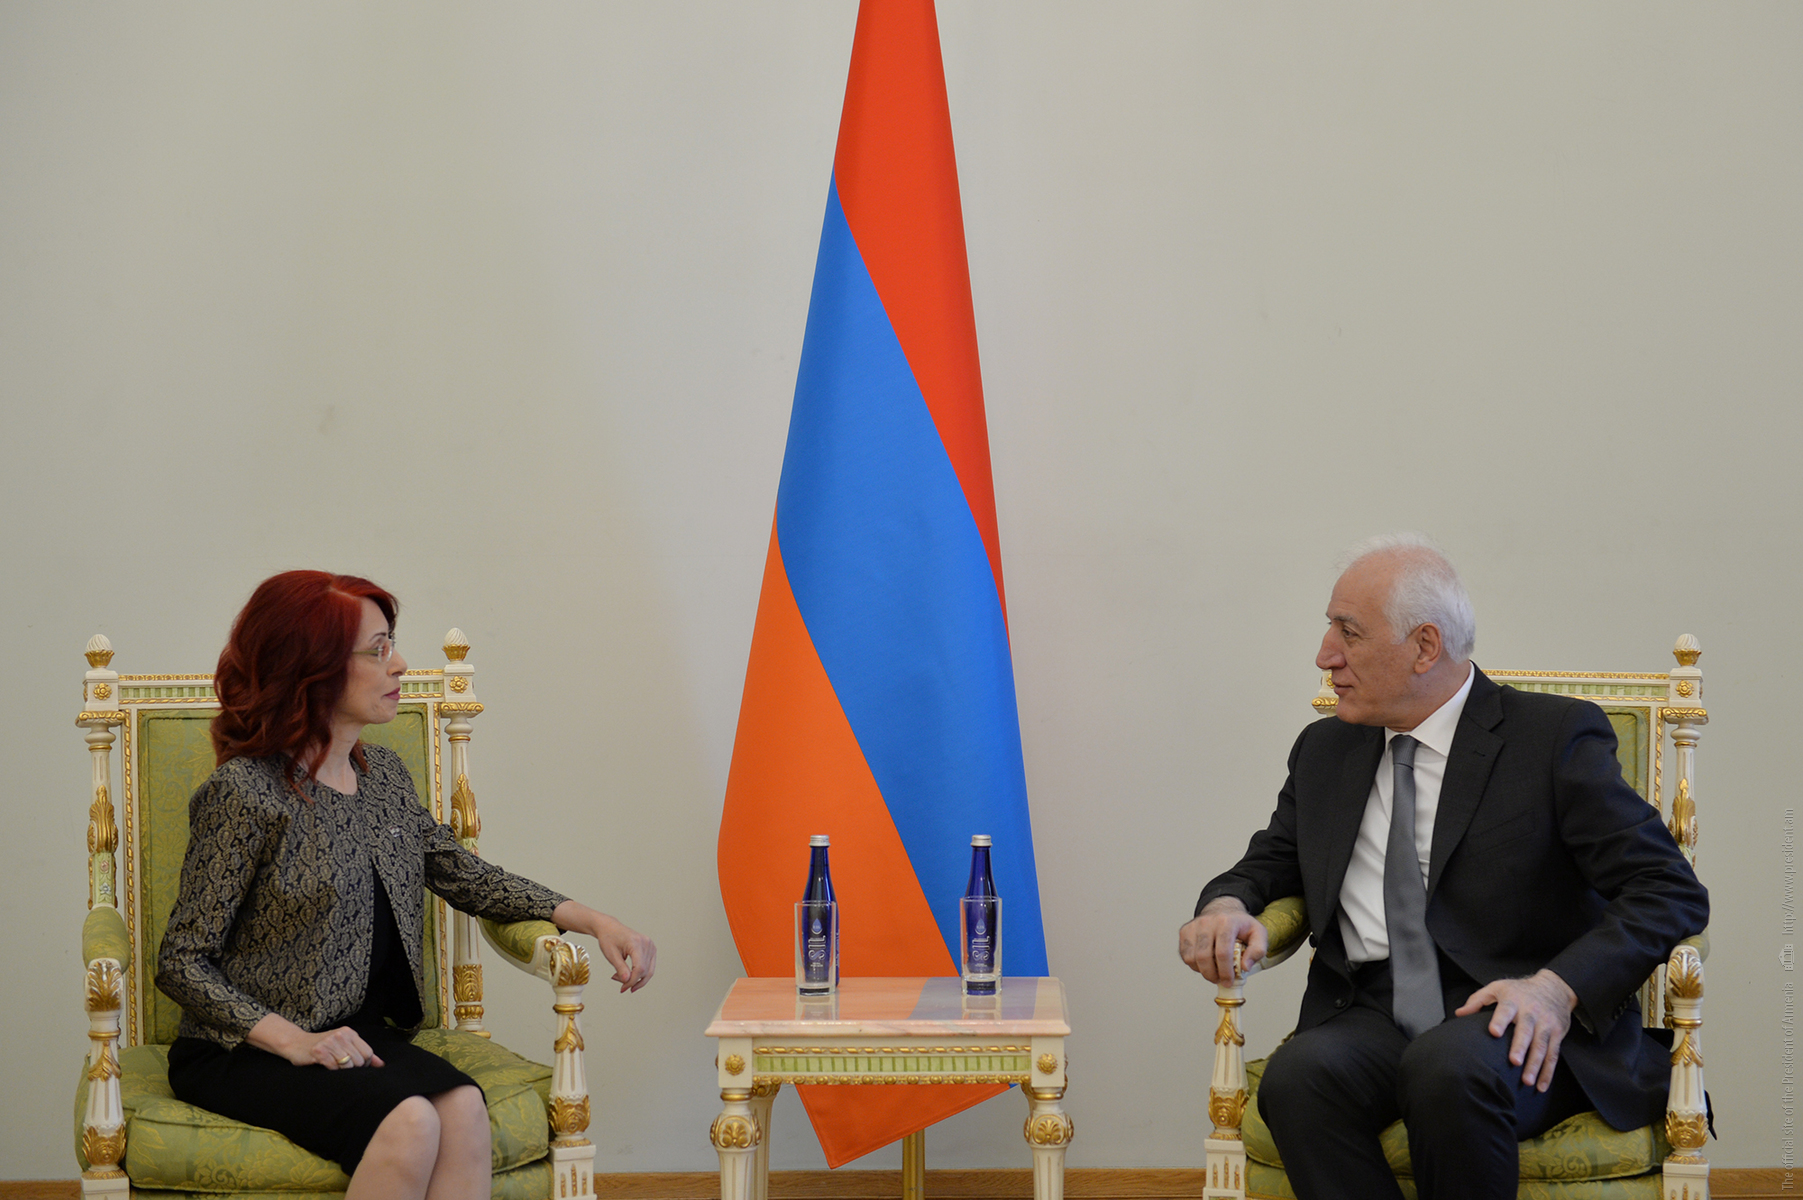 بالبروكار الدمشقي أريسيان تقدم أوراق اعتمادها للرئيس الأرميني